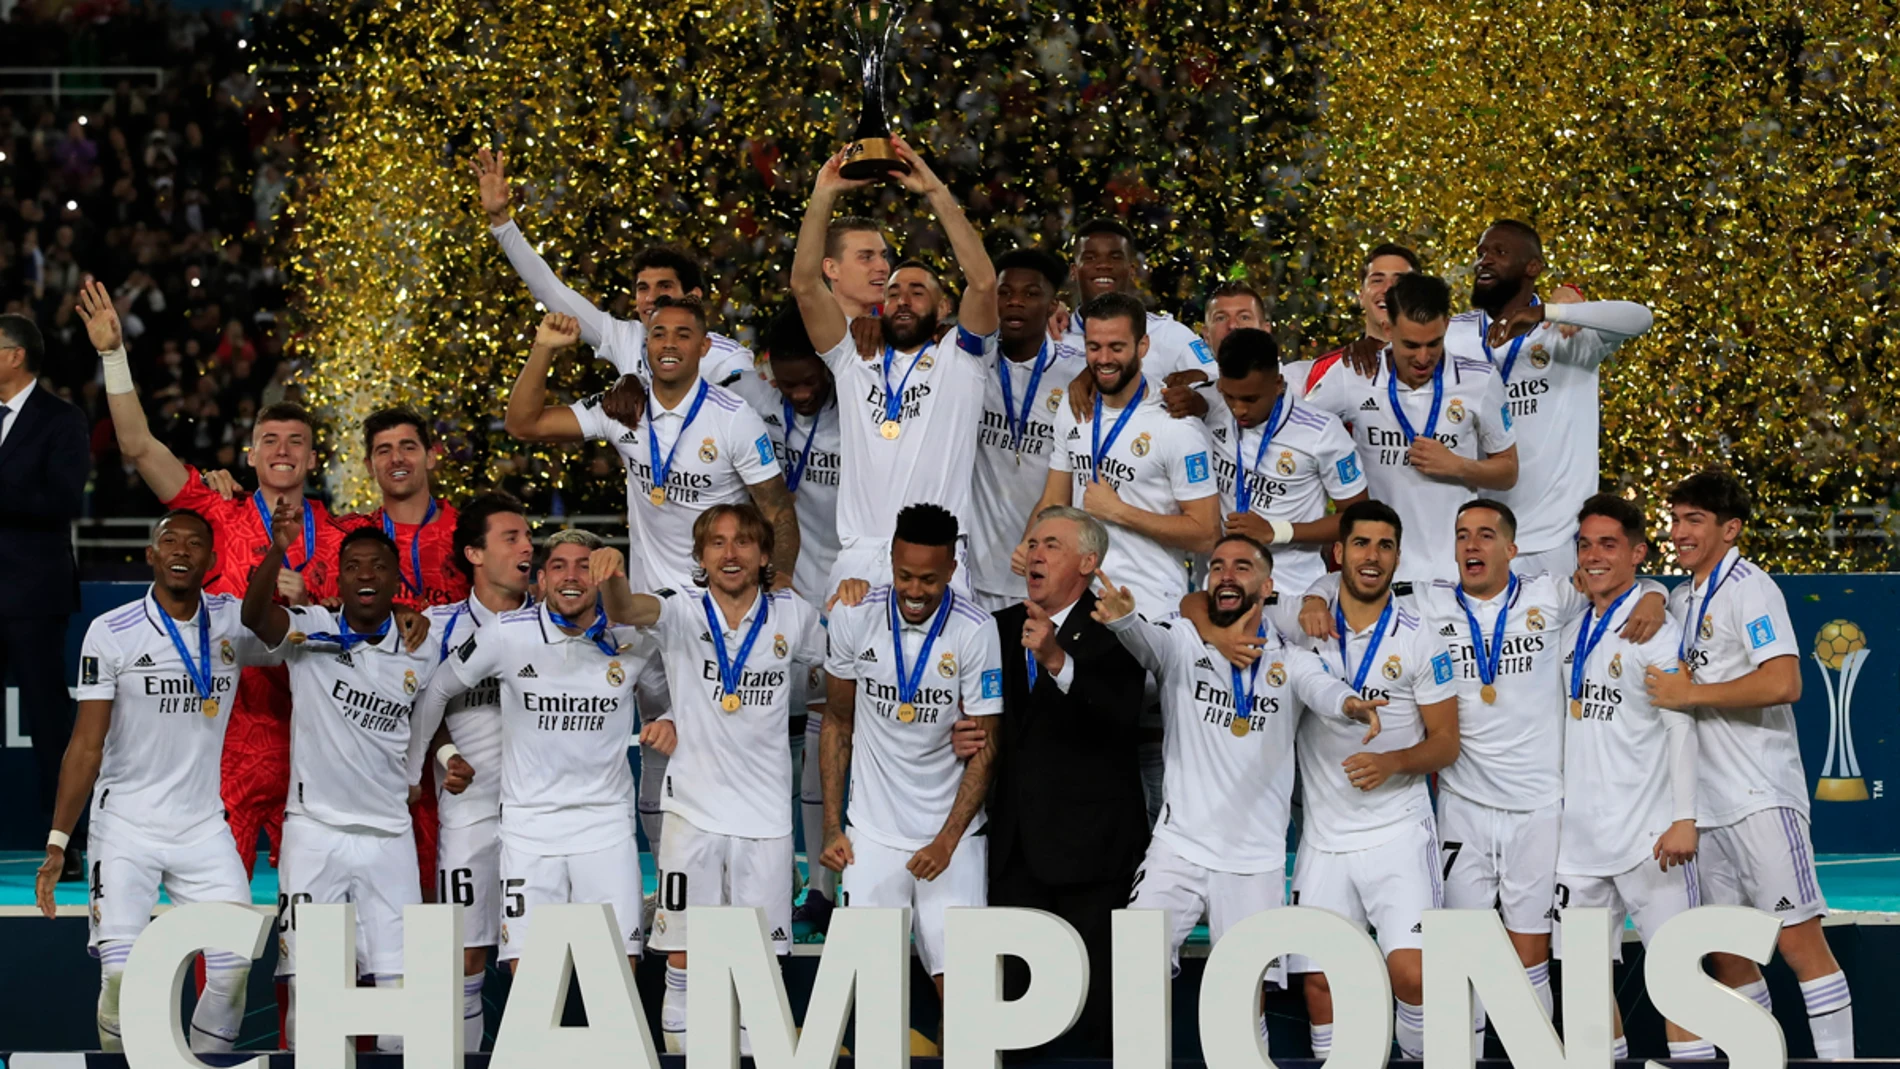 Real Madrid es un equipo de fútbol español con sede en la ciudad de Madrid. Fundado en 1902